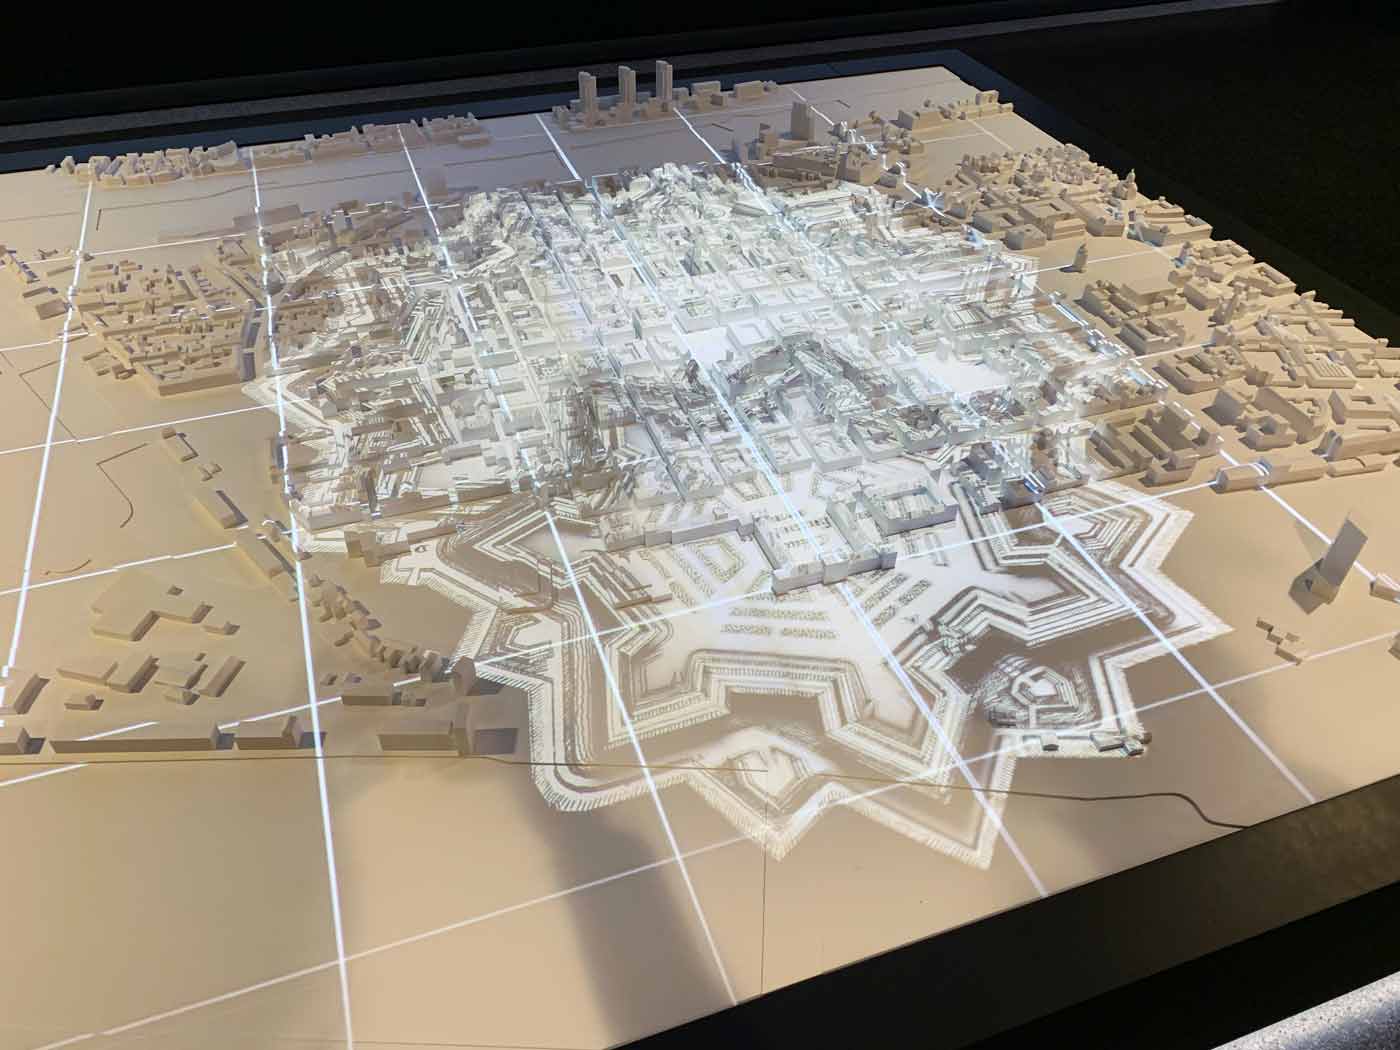 Modell eines Stadtgrundrisses mit Videoprojektionen